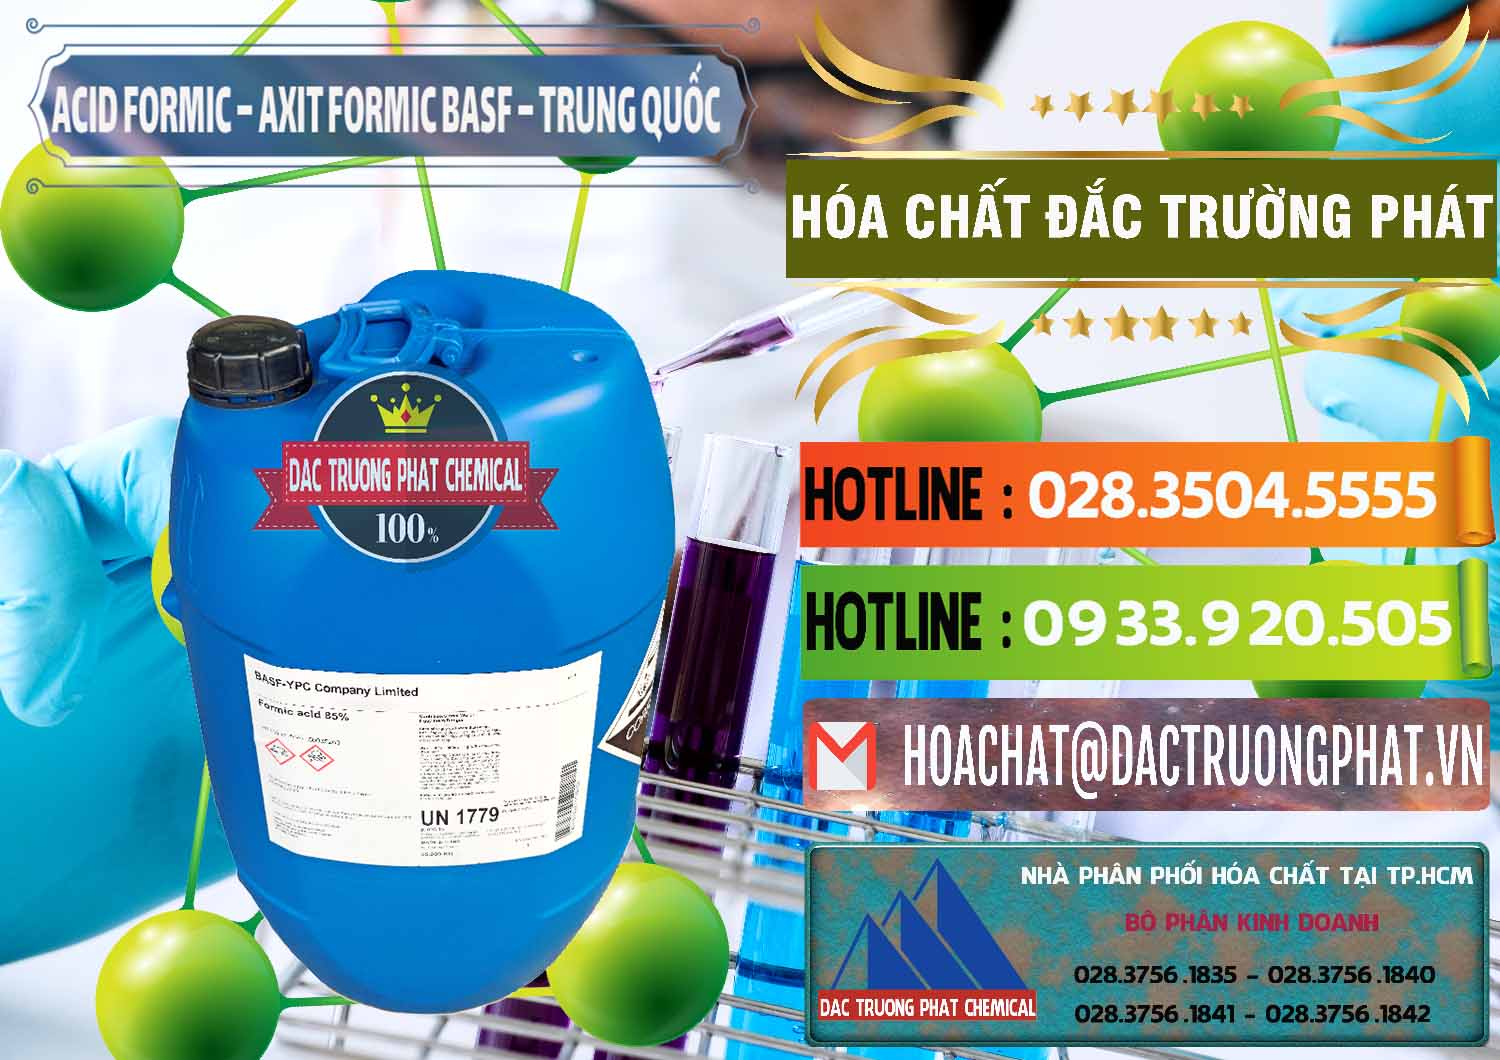 Đơn vị chuyên cung ứng - bán Acid Formic - Axit Formic BASF Trung Quốc China - 0025 - Công ty kinh doanh và cung cấp hóa chất tại TP.HCM - cungcaphoachat.com.vn